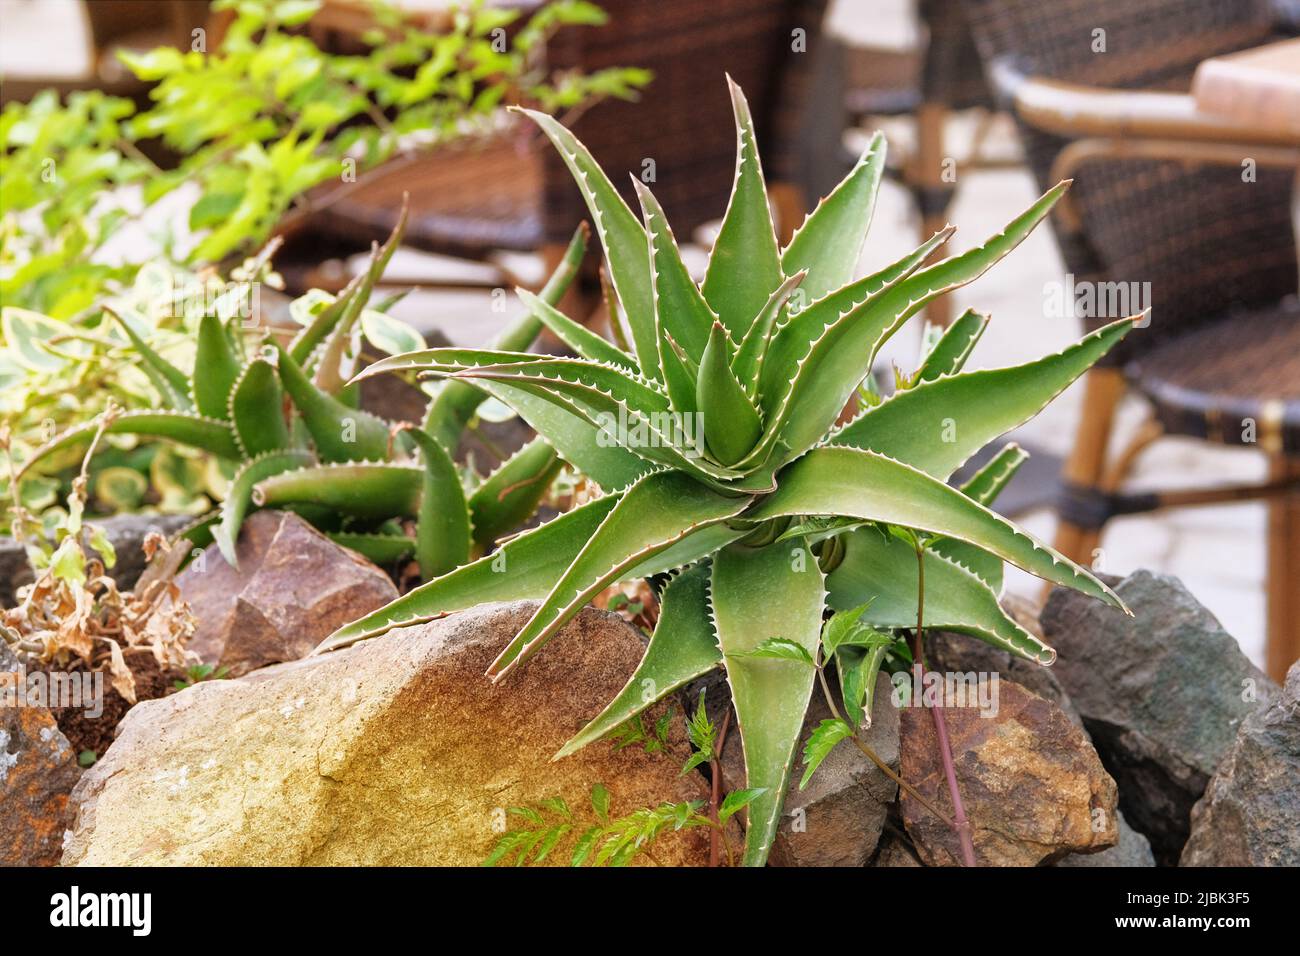 Aloe wachsen in einem grünen Haus. Sukulente Pflanze, die eine Rosette aus gezahnten fleischigen Blättern und glockenförmigen oder röhrenförmigen Blüten an langen Stielen hat. Stockfoto